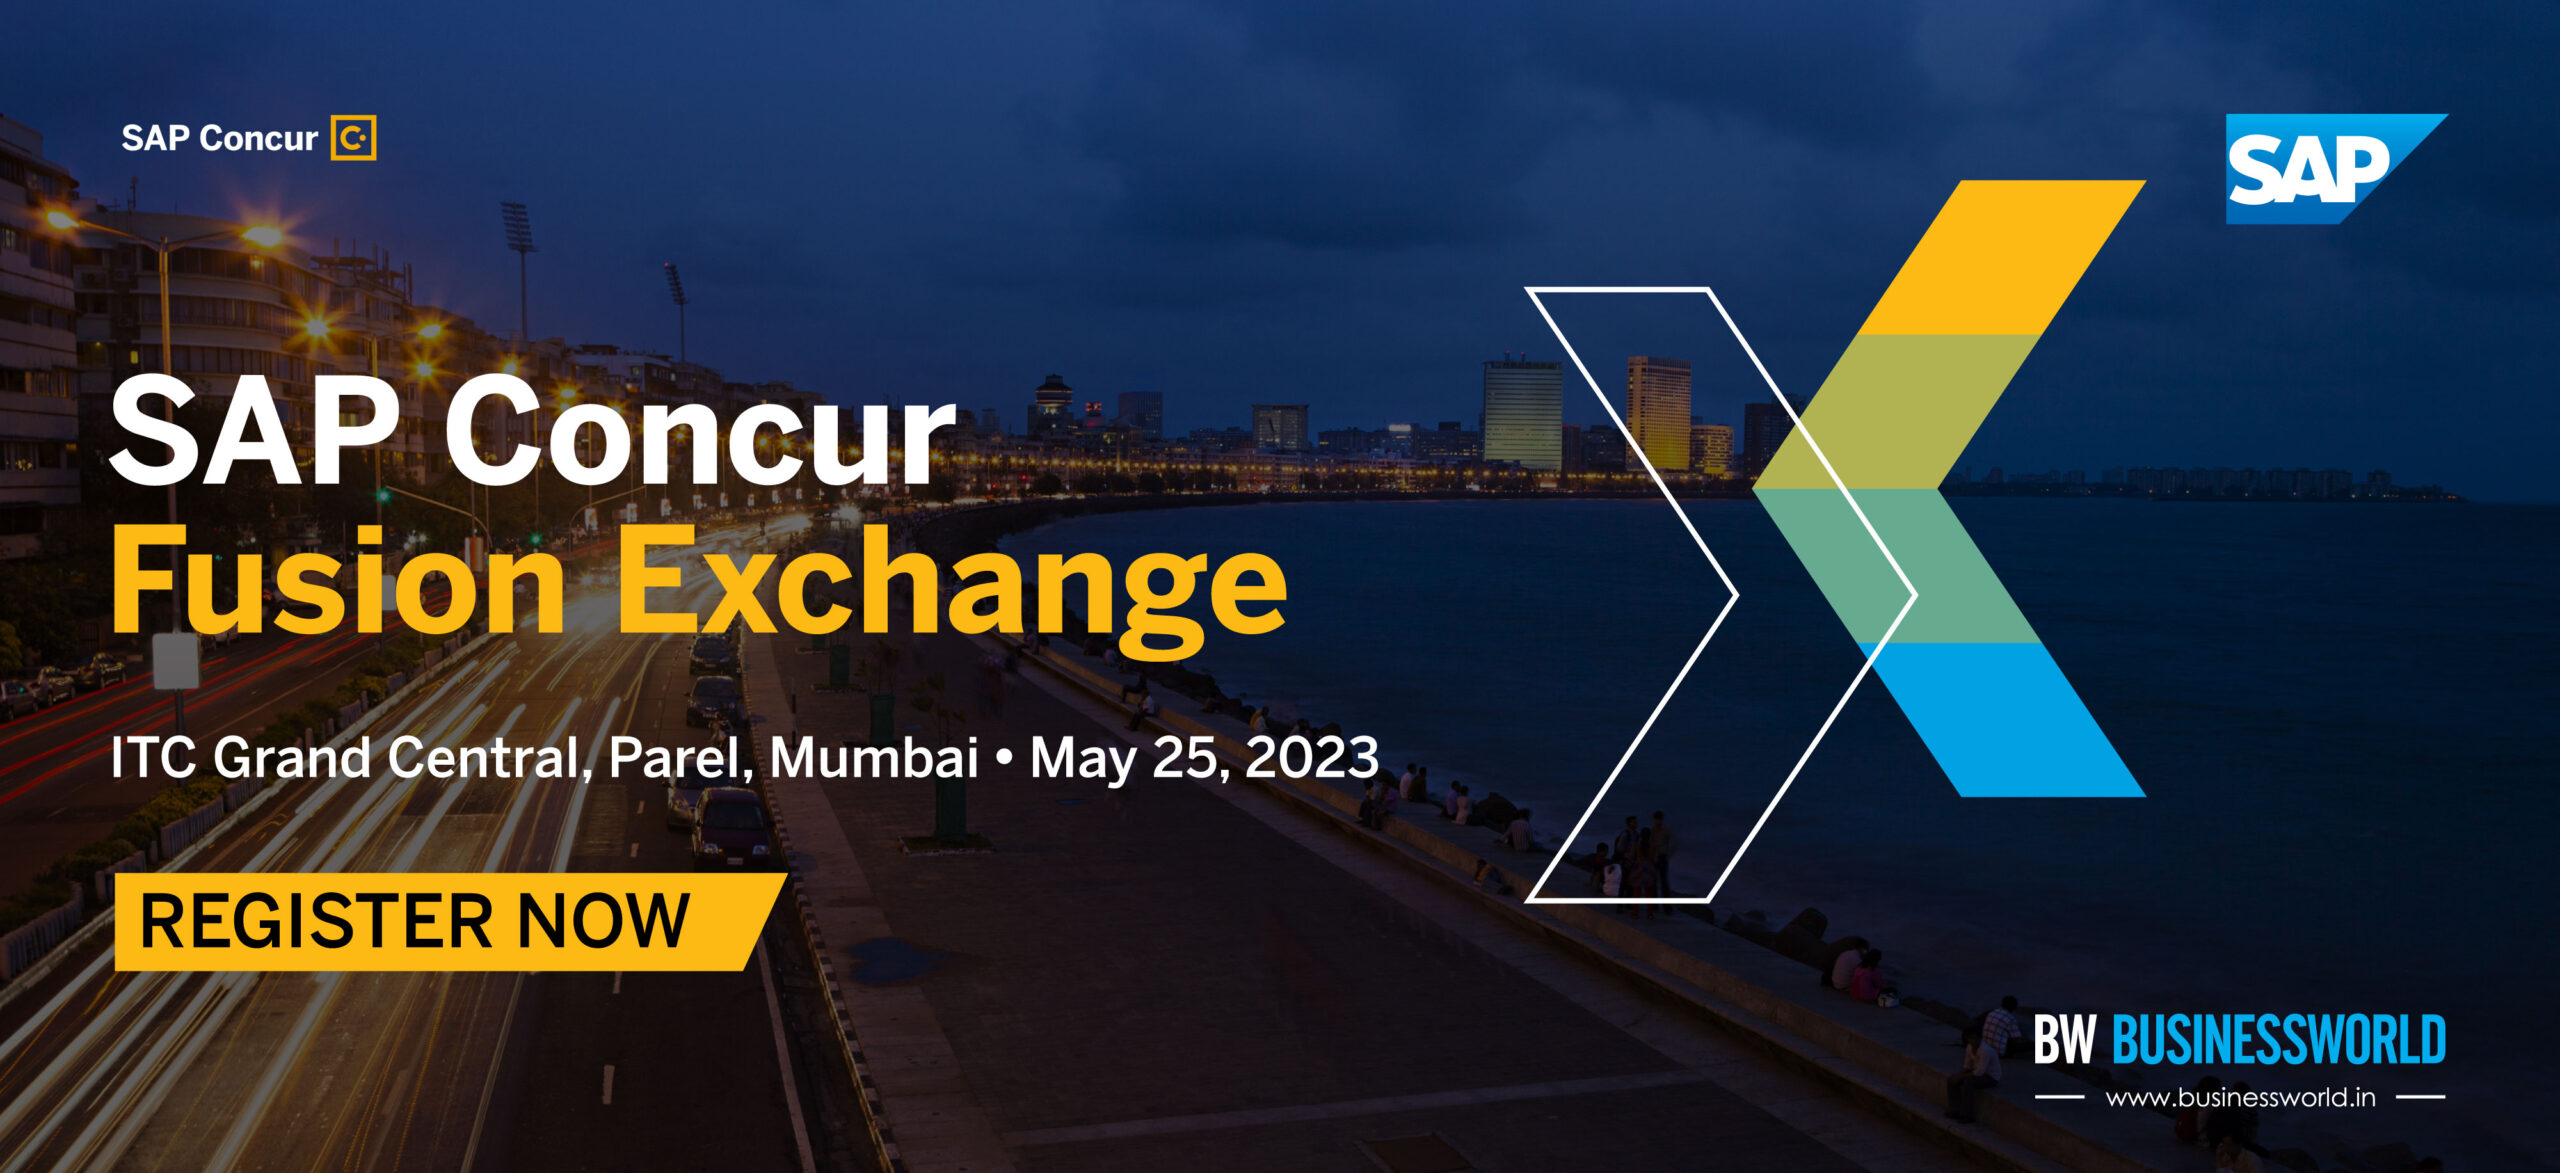 SAP Concur Fusion Exchange series 2023